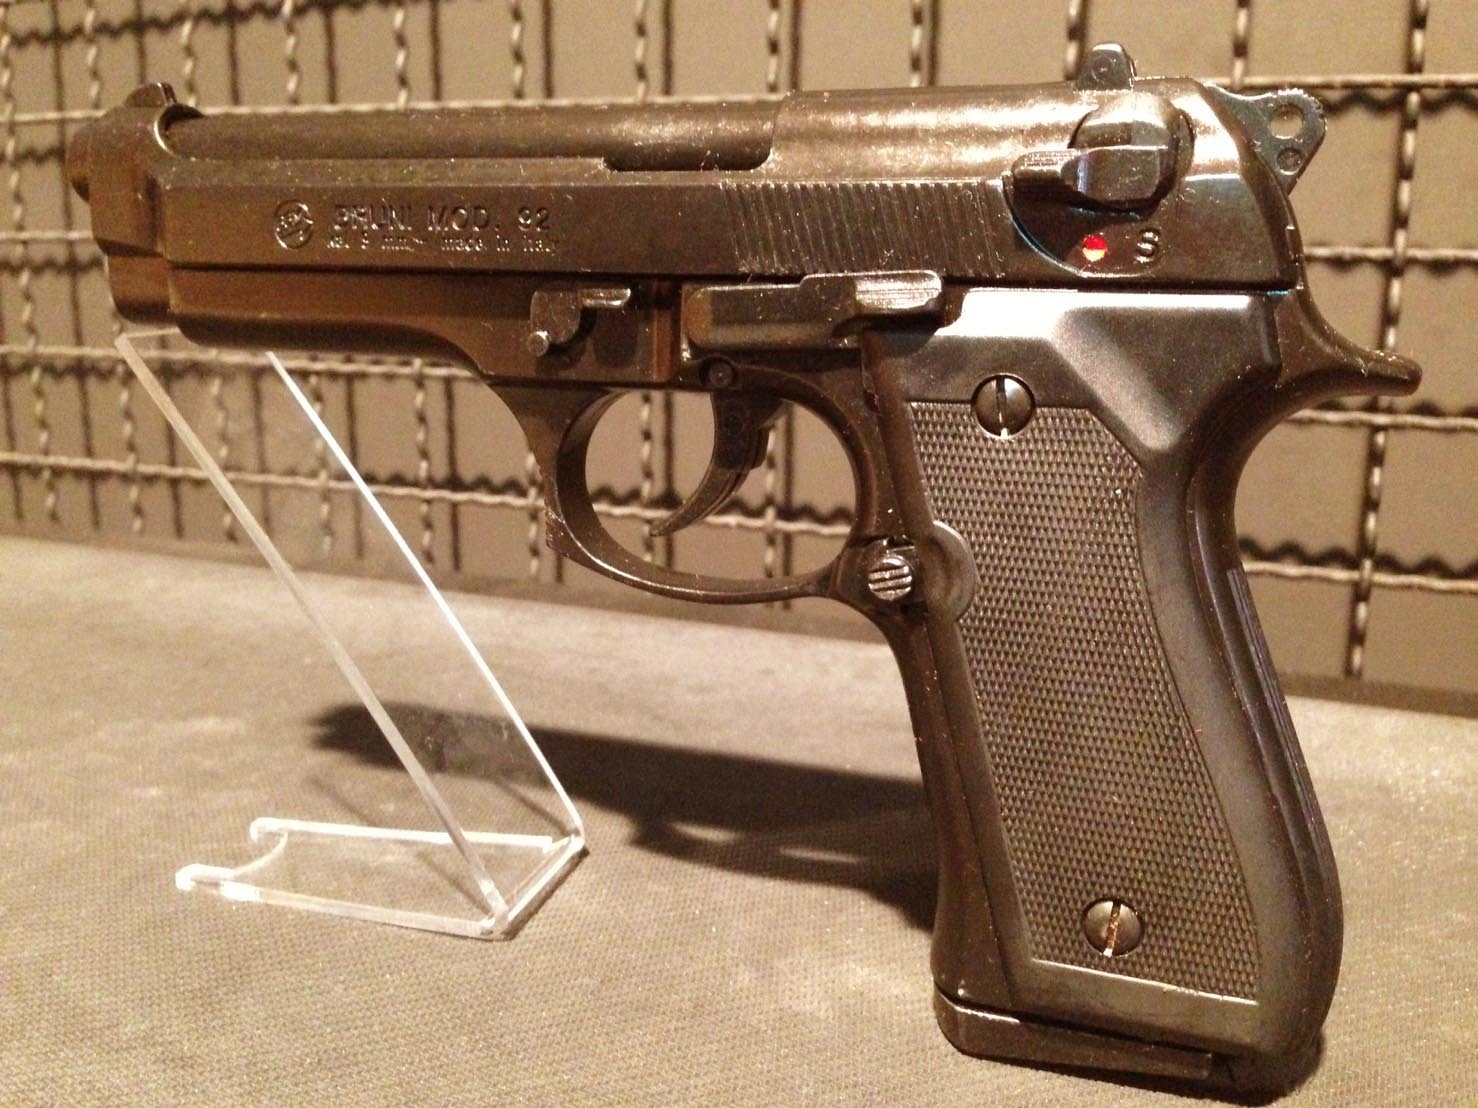 รูปภาพของ Blank แบลงค์กัน M92 fs ปืนสุดคลาสสิคยุค 90 หรือที่เรียกขานกันว่า ปืนพระเอก ต้นตำรับจากอิตาลี สีรมดำด้าน สวย ดุ ดิบ คลาสสิค Made in Italy